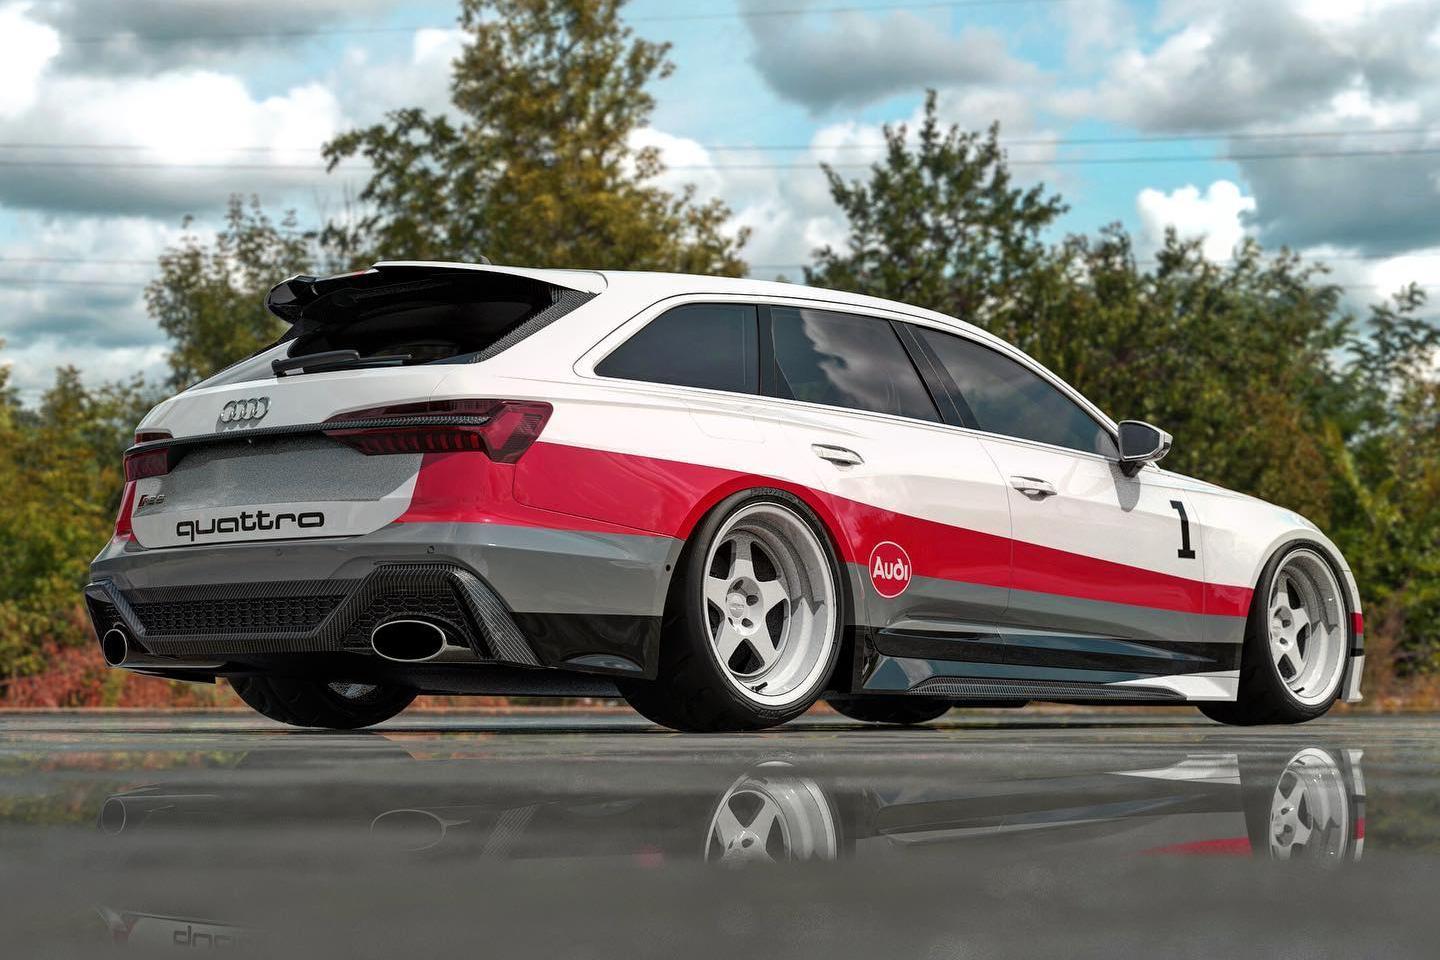 บอดี้ก้าวร้าวขึ้น! Audi RS6 Avant ที่ได้รับแรงบันดาลใจจากรถแรลลี่ในตำนาน